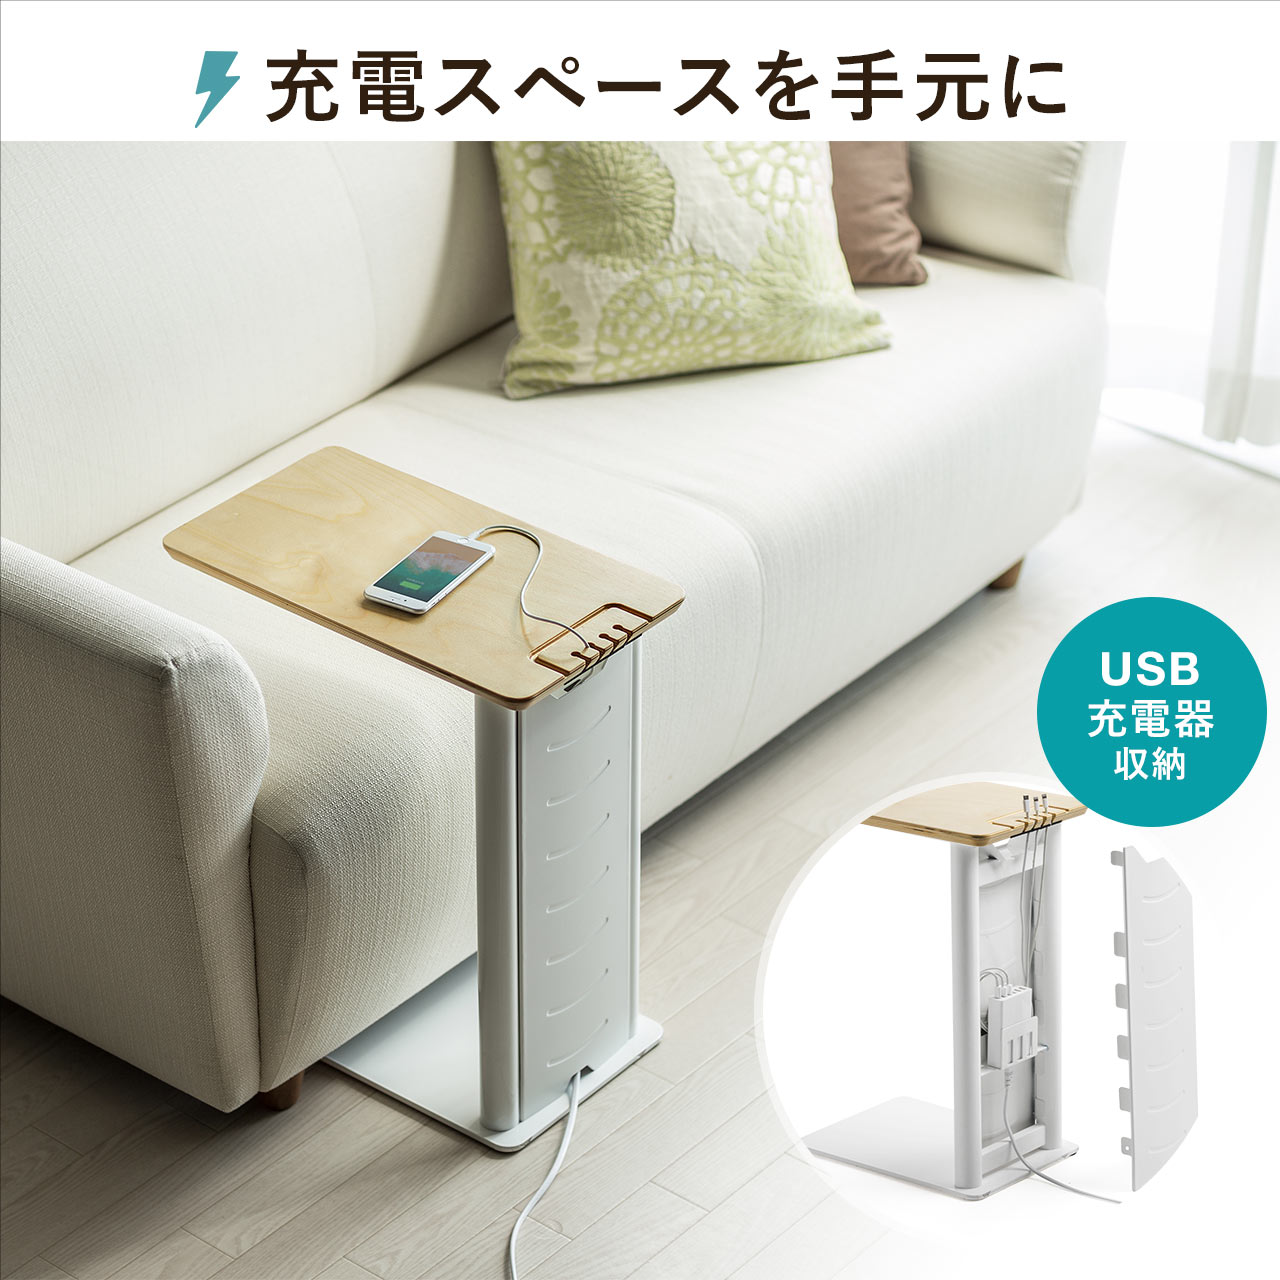 サイドテーブル ナイトテーブル ソファサイドテーブル 充電ステーション 木製 ベッドテーブル USB充電器収納タイプ 天然木 ソファーテーブル スチール おしゃれ ベッド ベッドサイドテーブル